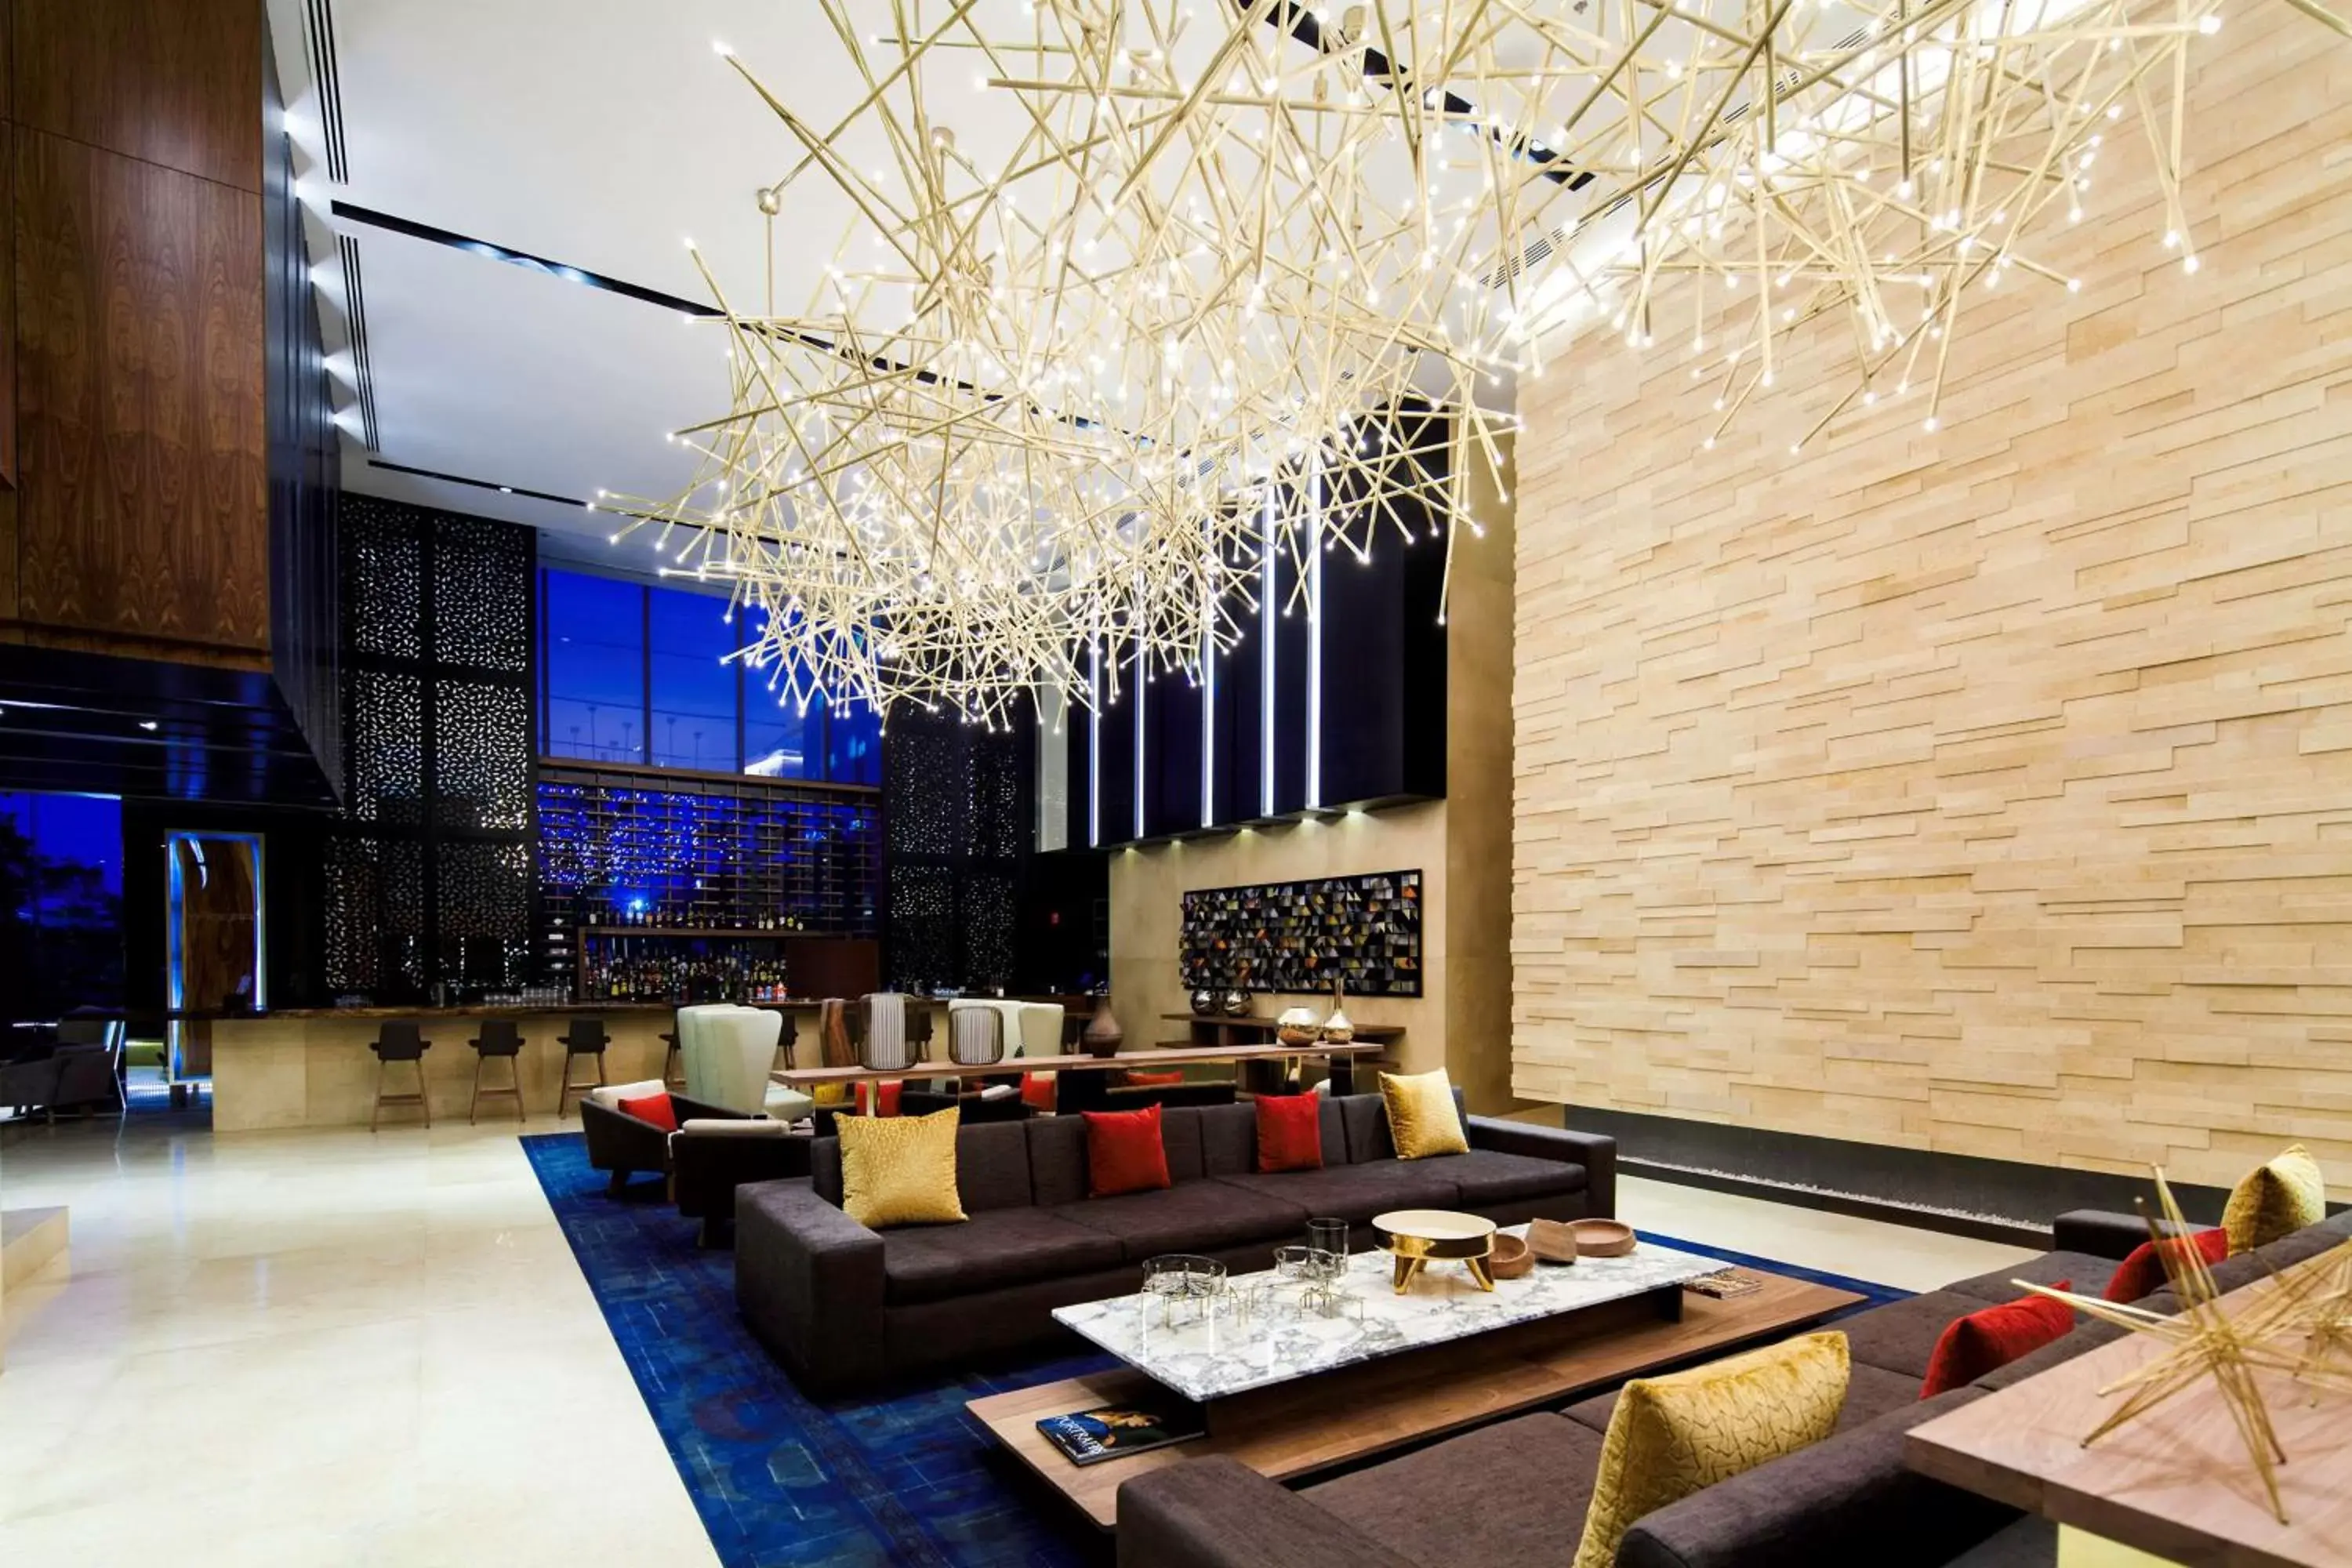 Lobby or reception in Hilton Mexico City Santa Fe